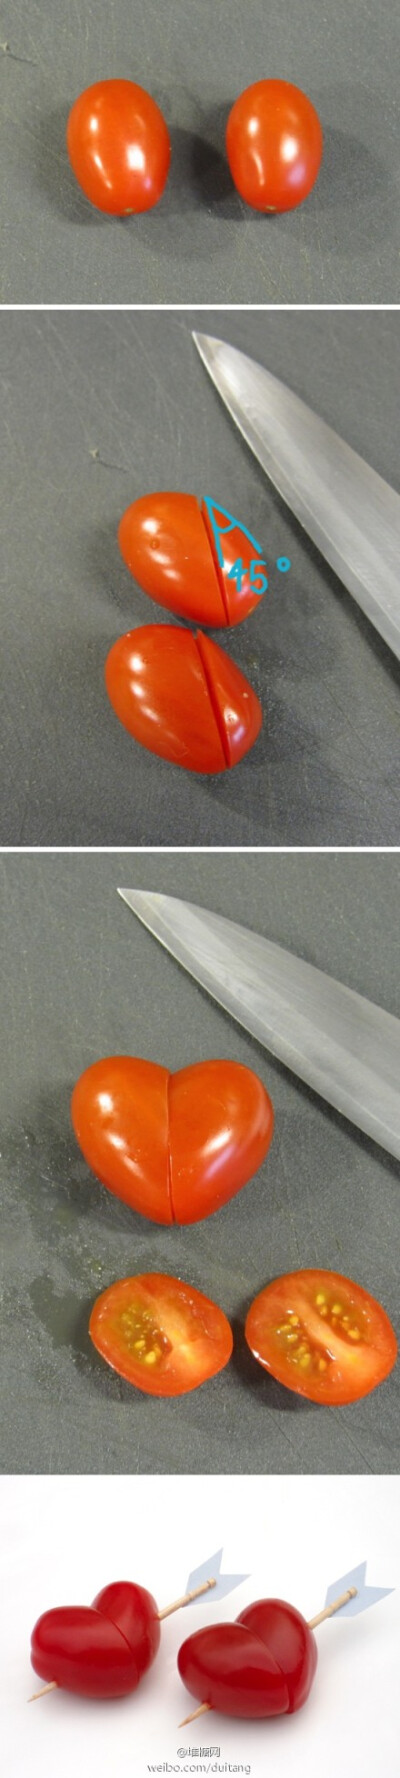 爱心番茄